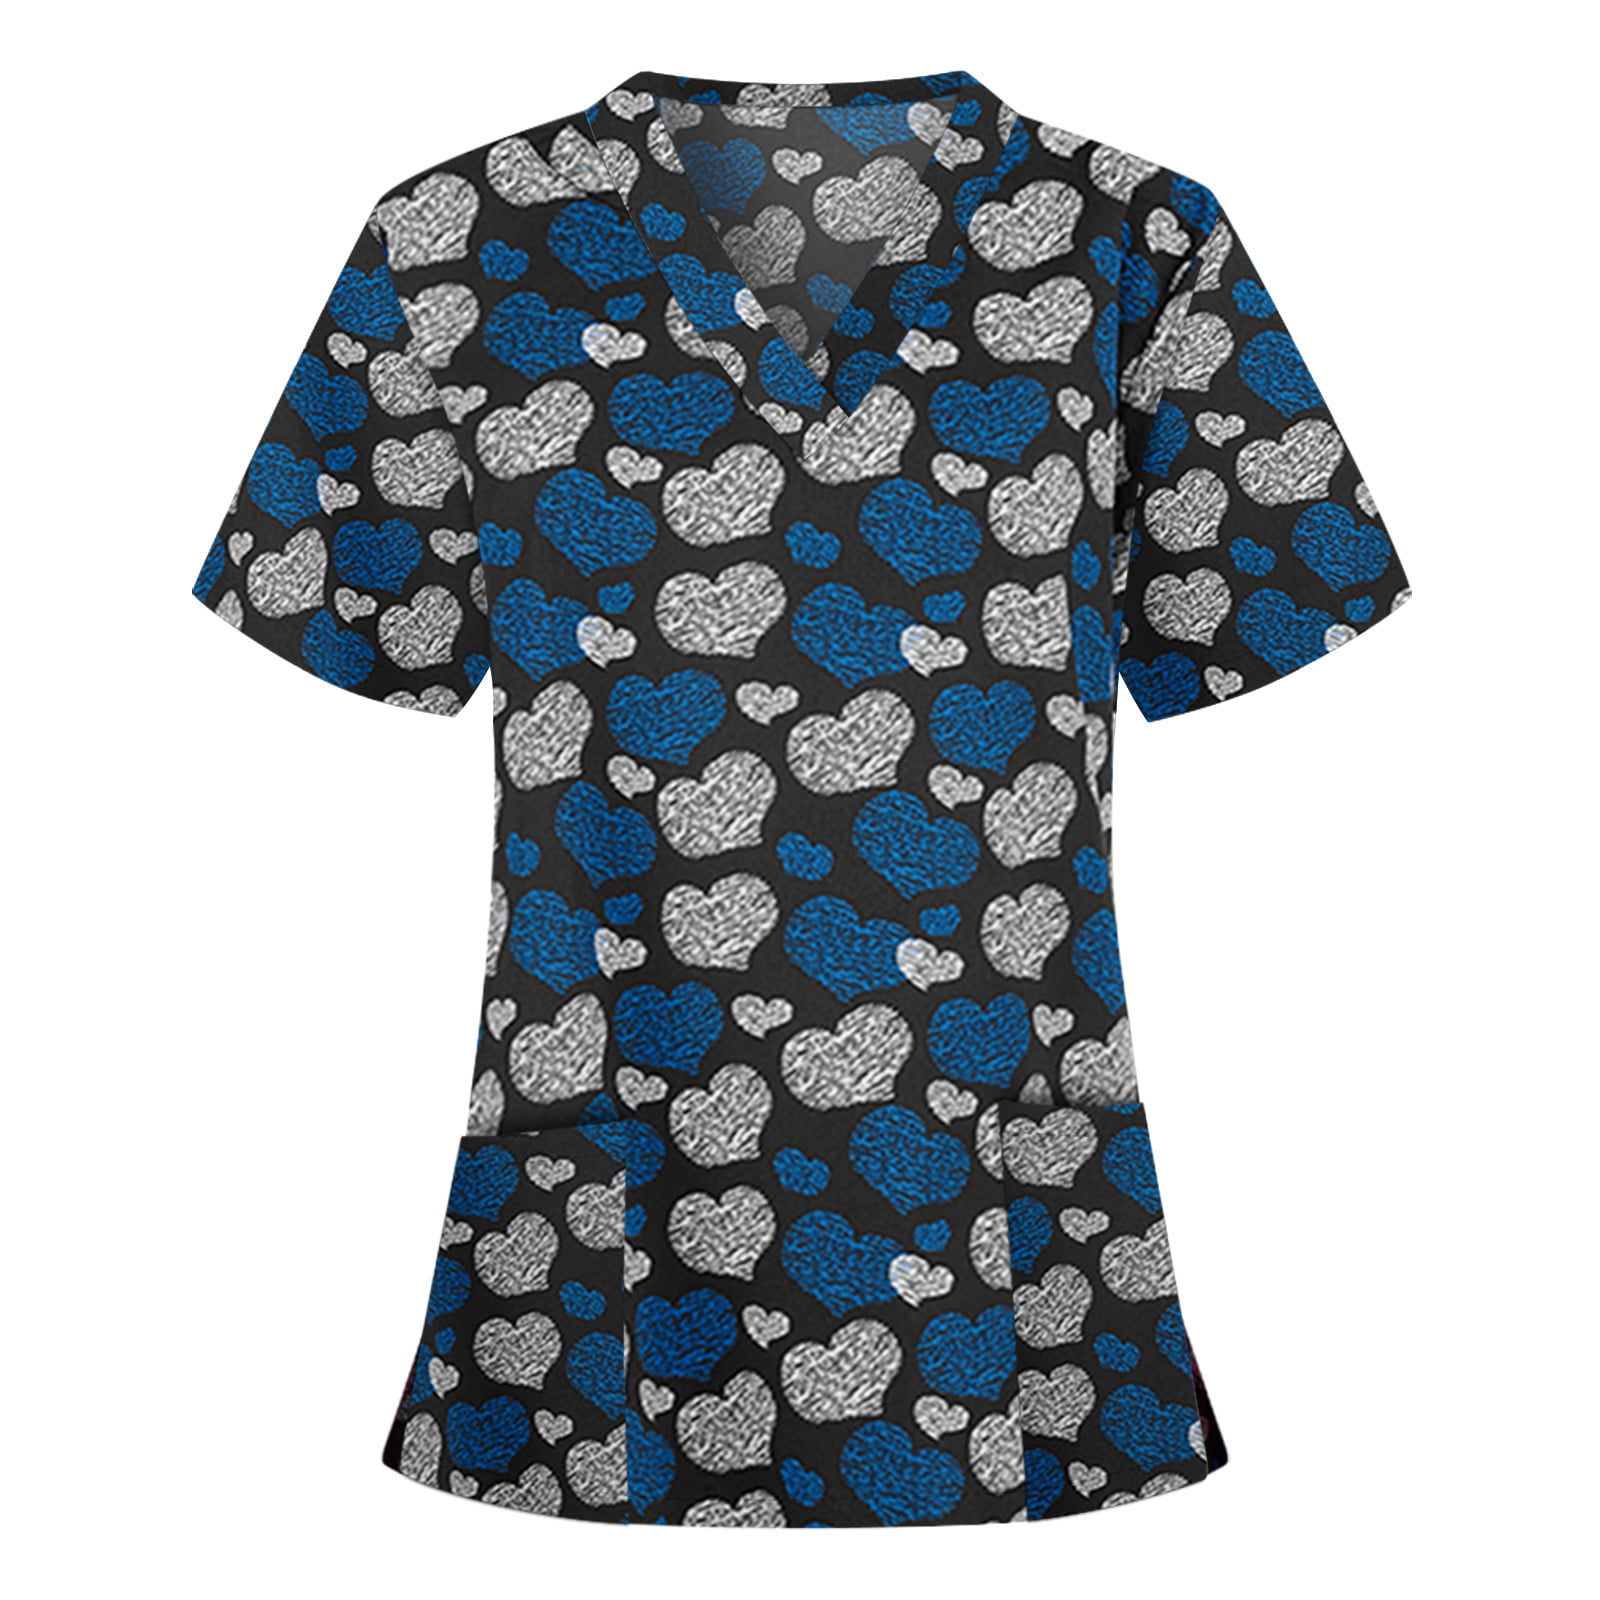 Fxbar,Mens New Pattern Casual Tee Tops Short-Sleeve Button-up Shirts Lightweight Boy Shirt 